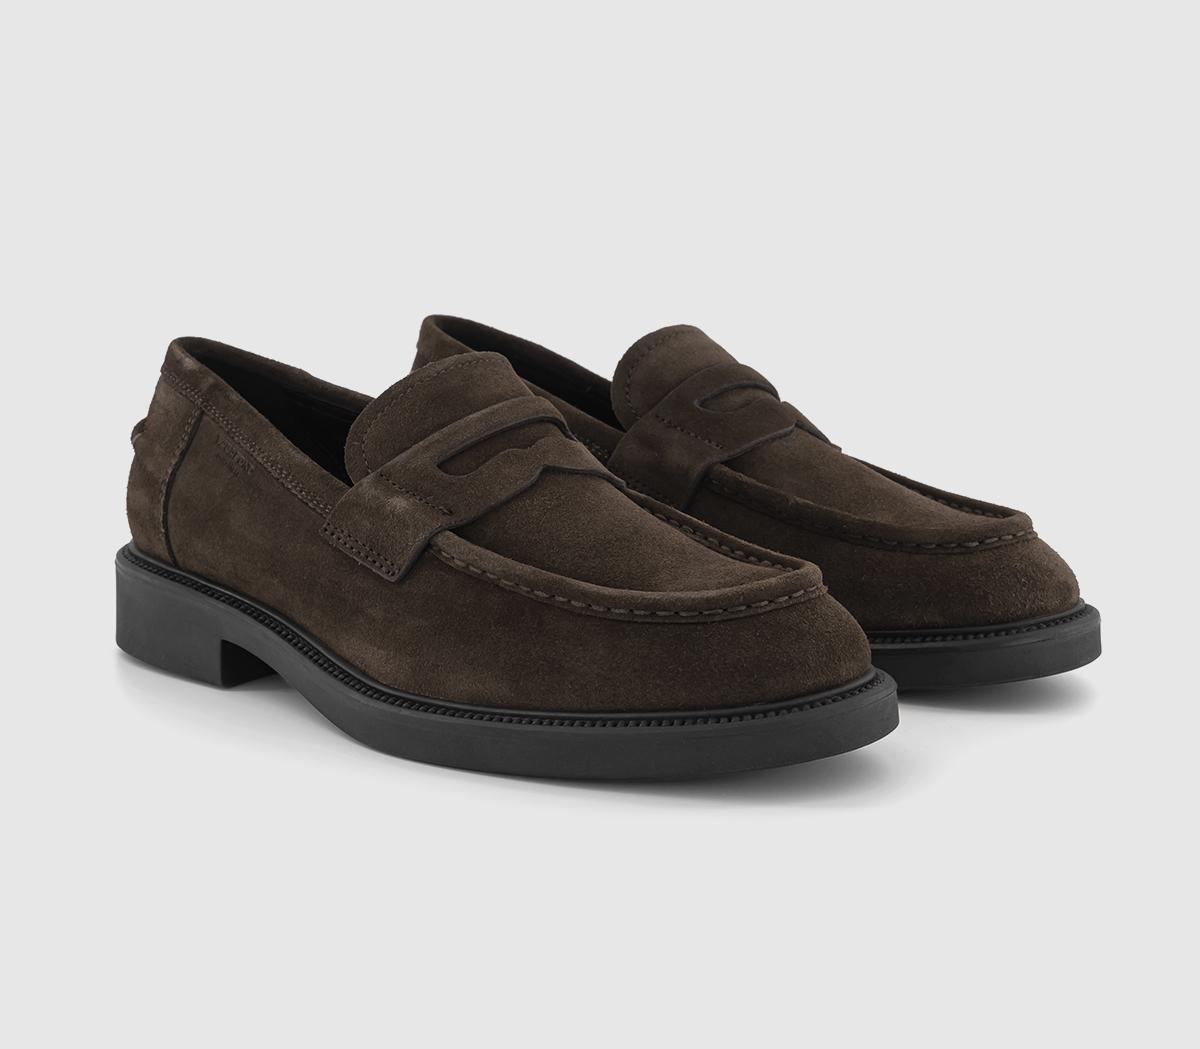 Vagabond Shoemakers Alex Loafers Java - Men’s Smart Shoes